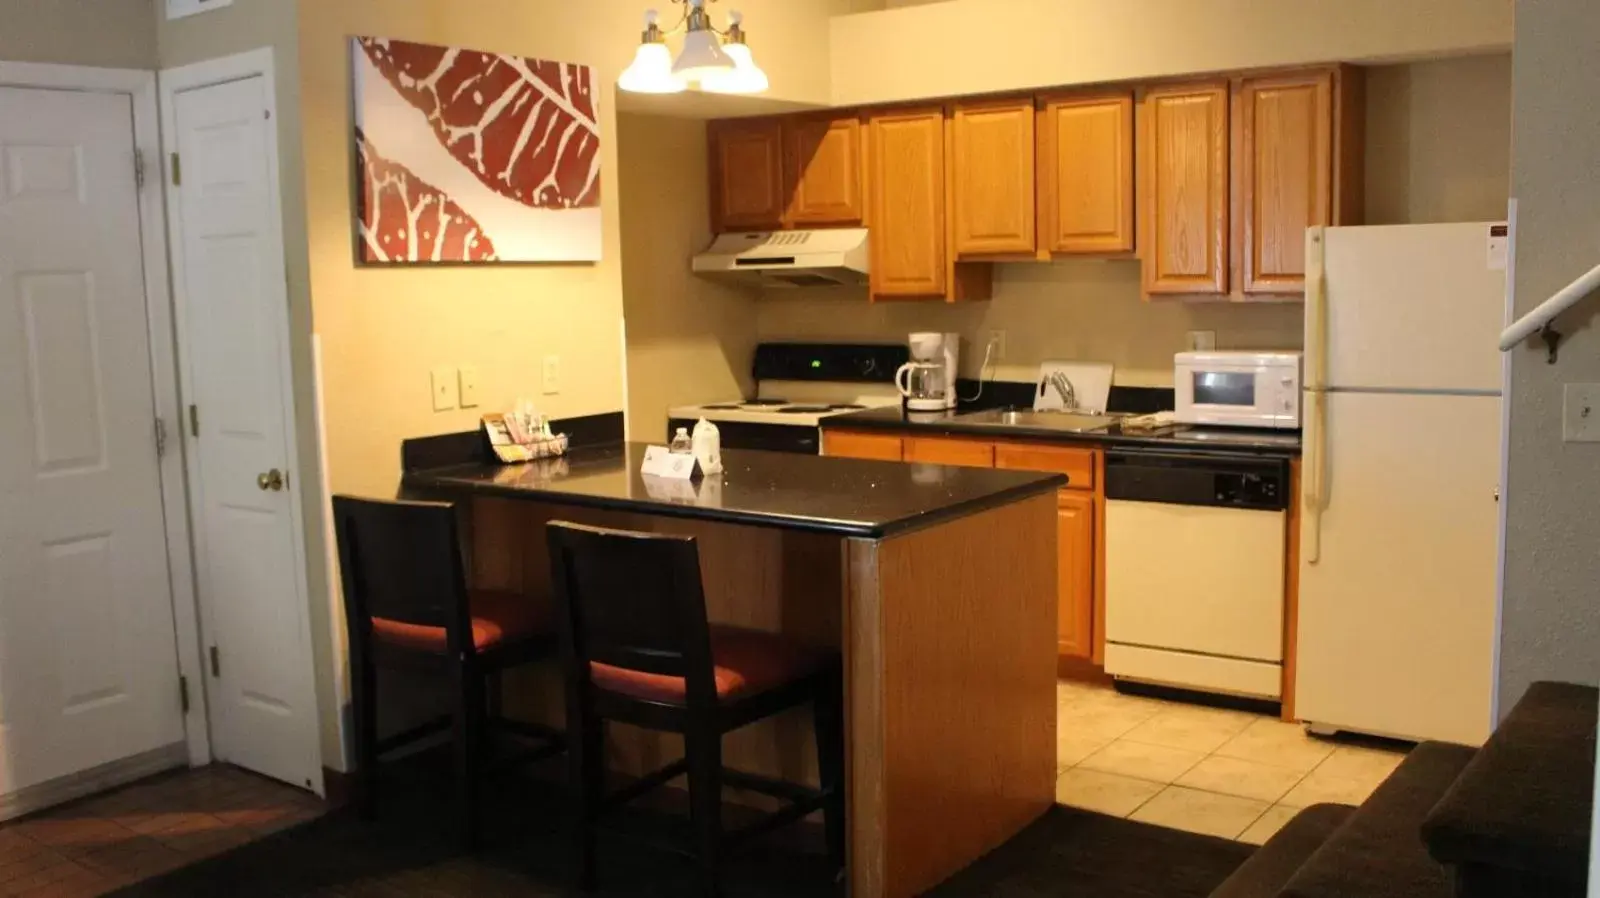 Kitchen/Kitchenette in Hawthorn Suites Wichita East